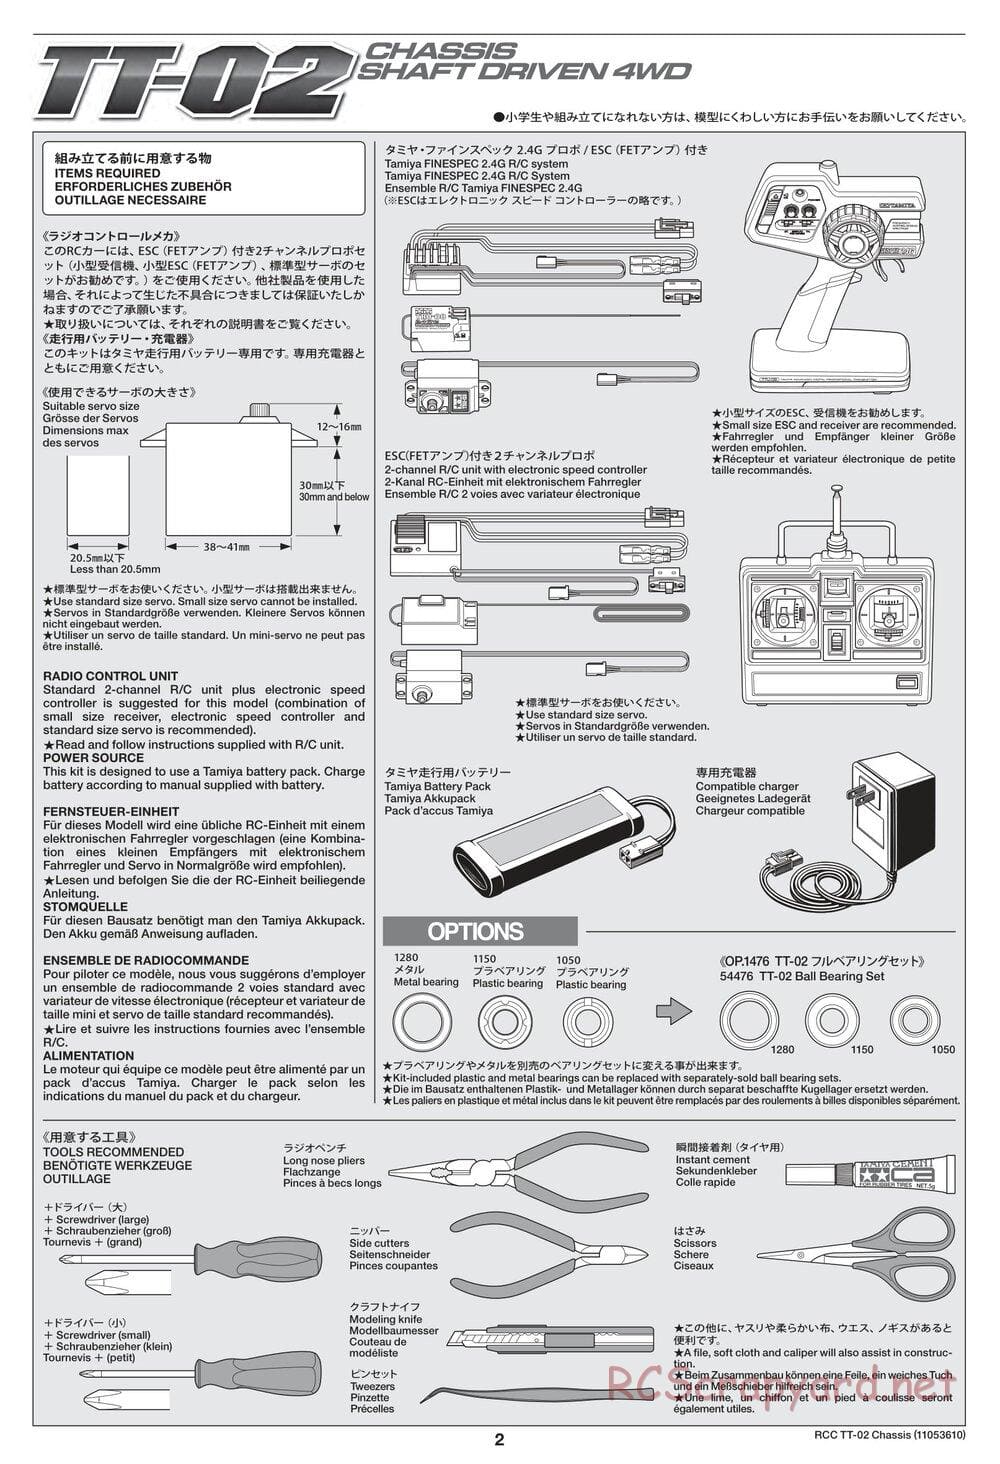 Tamiya - TT-02 Chassis - Manual - Page 2